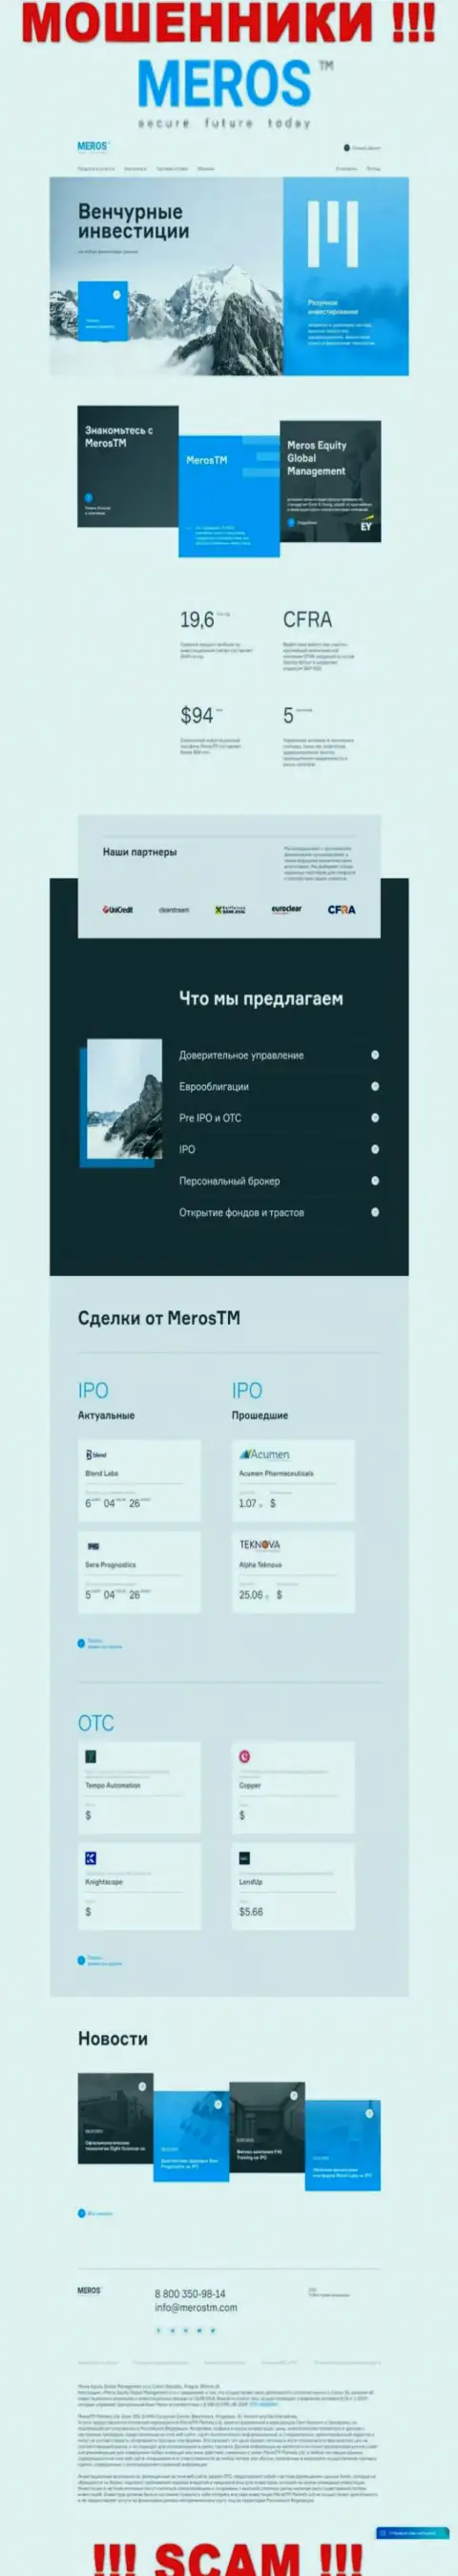 Обзор официального веб-ресурса мошенников MerosTM